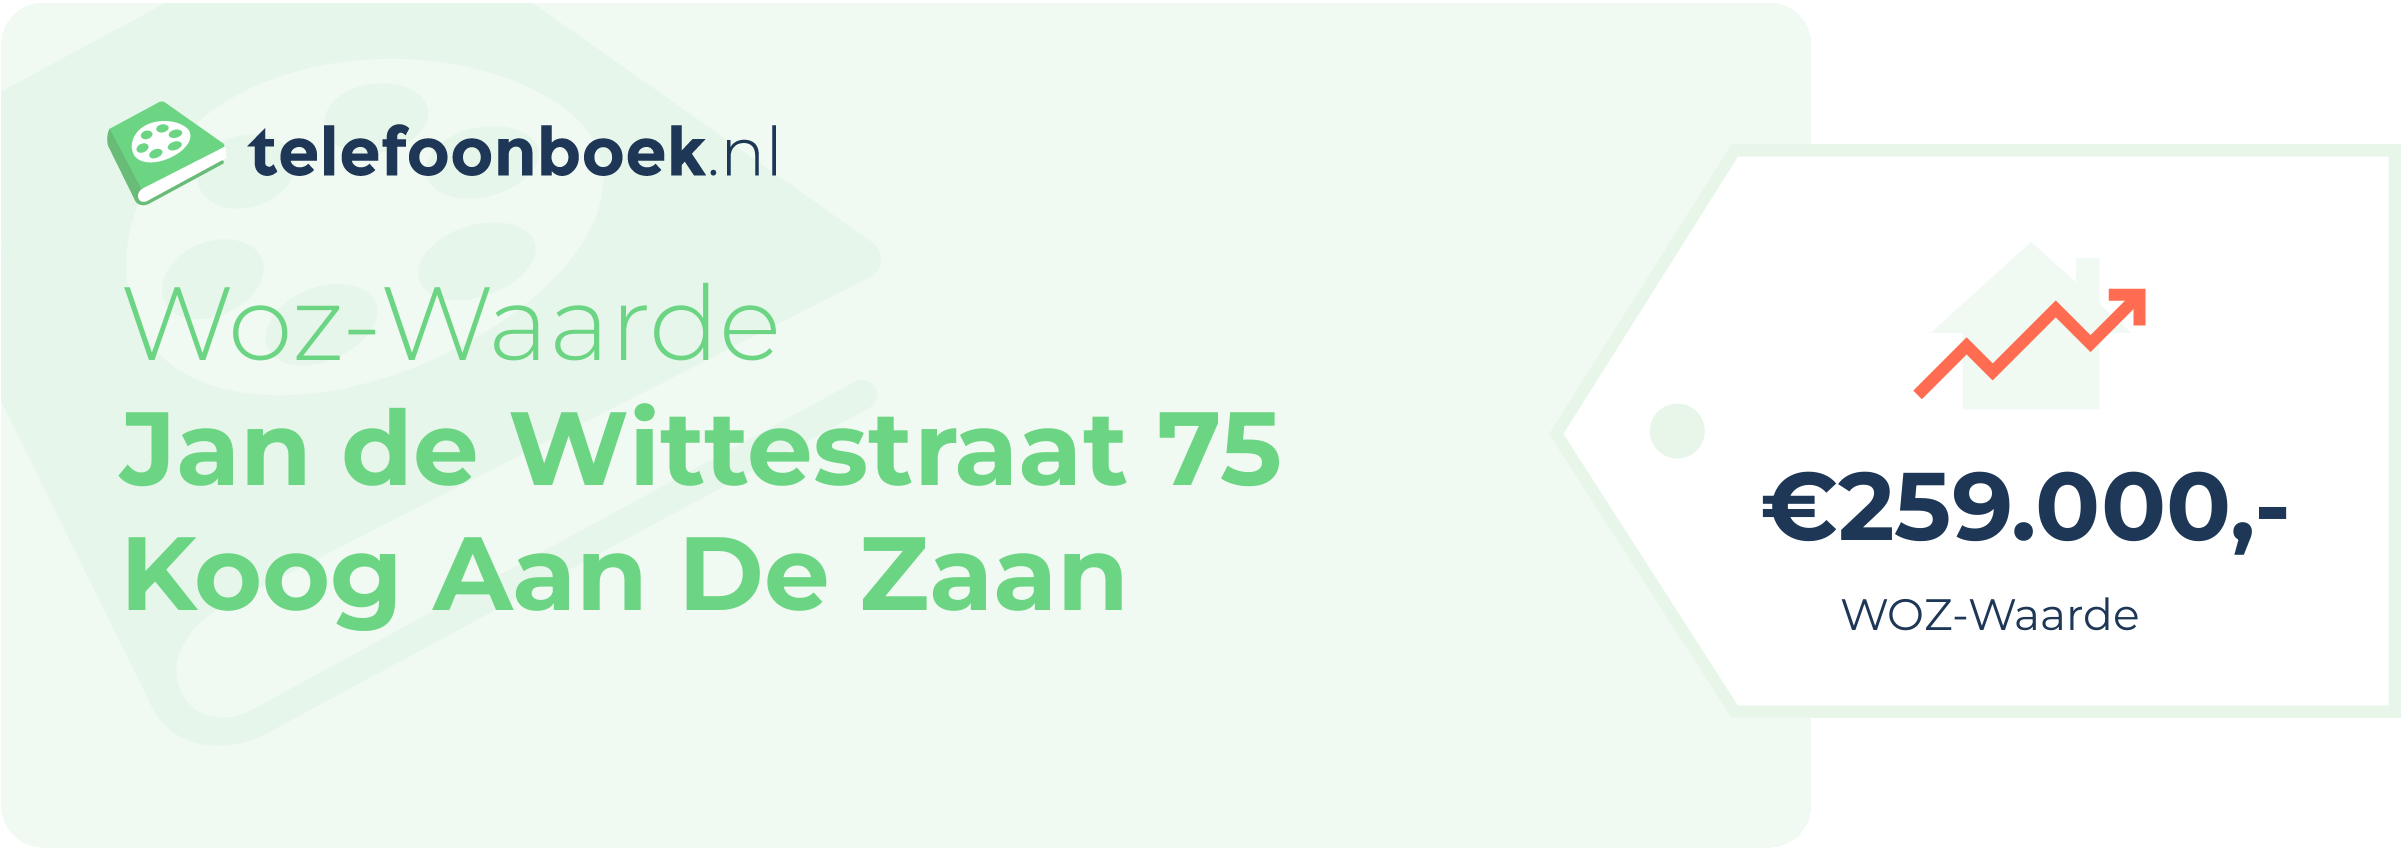 WOZ-waarde Jan De Wittestraat 75 Koog Aan De Zaan